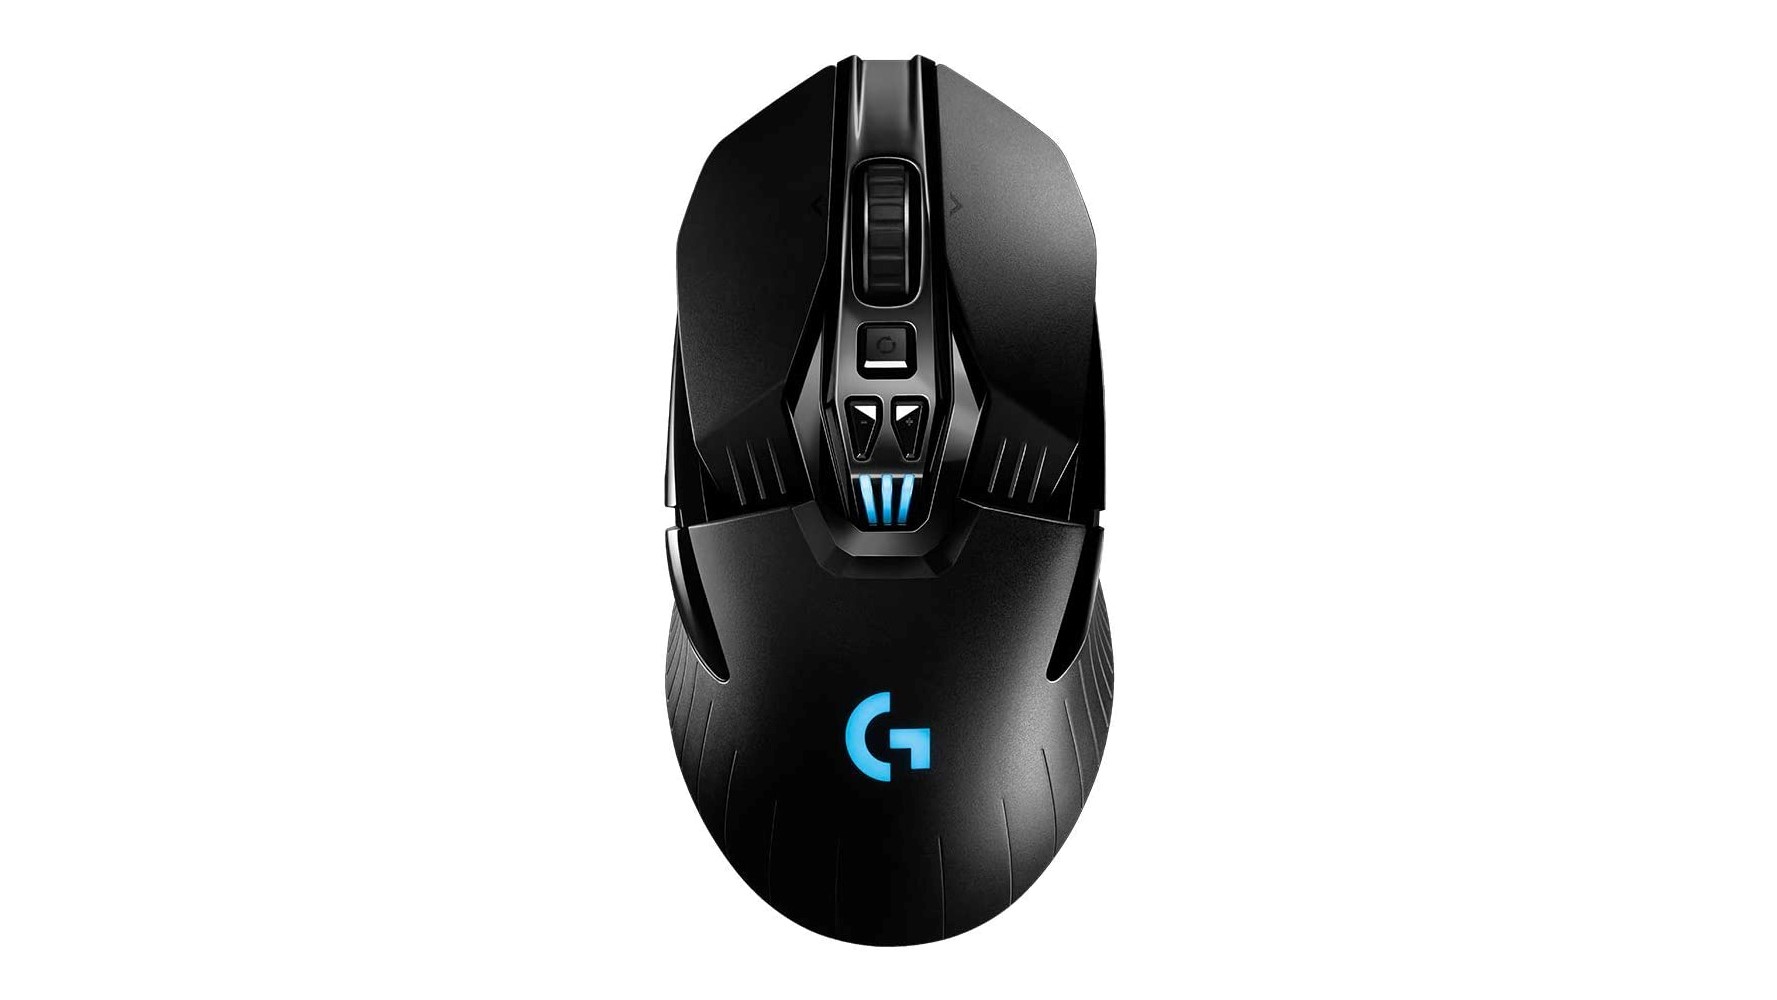 Logitech G903 mouse